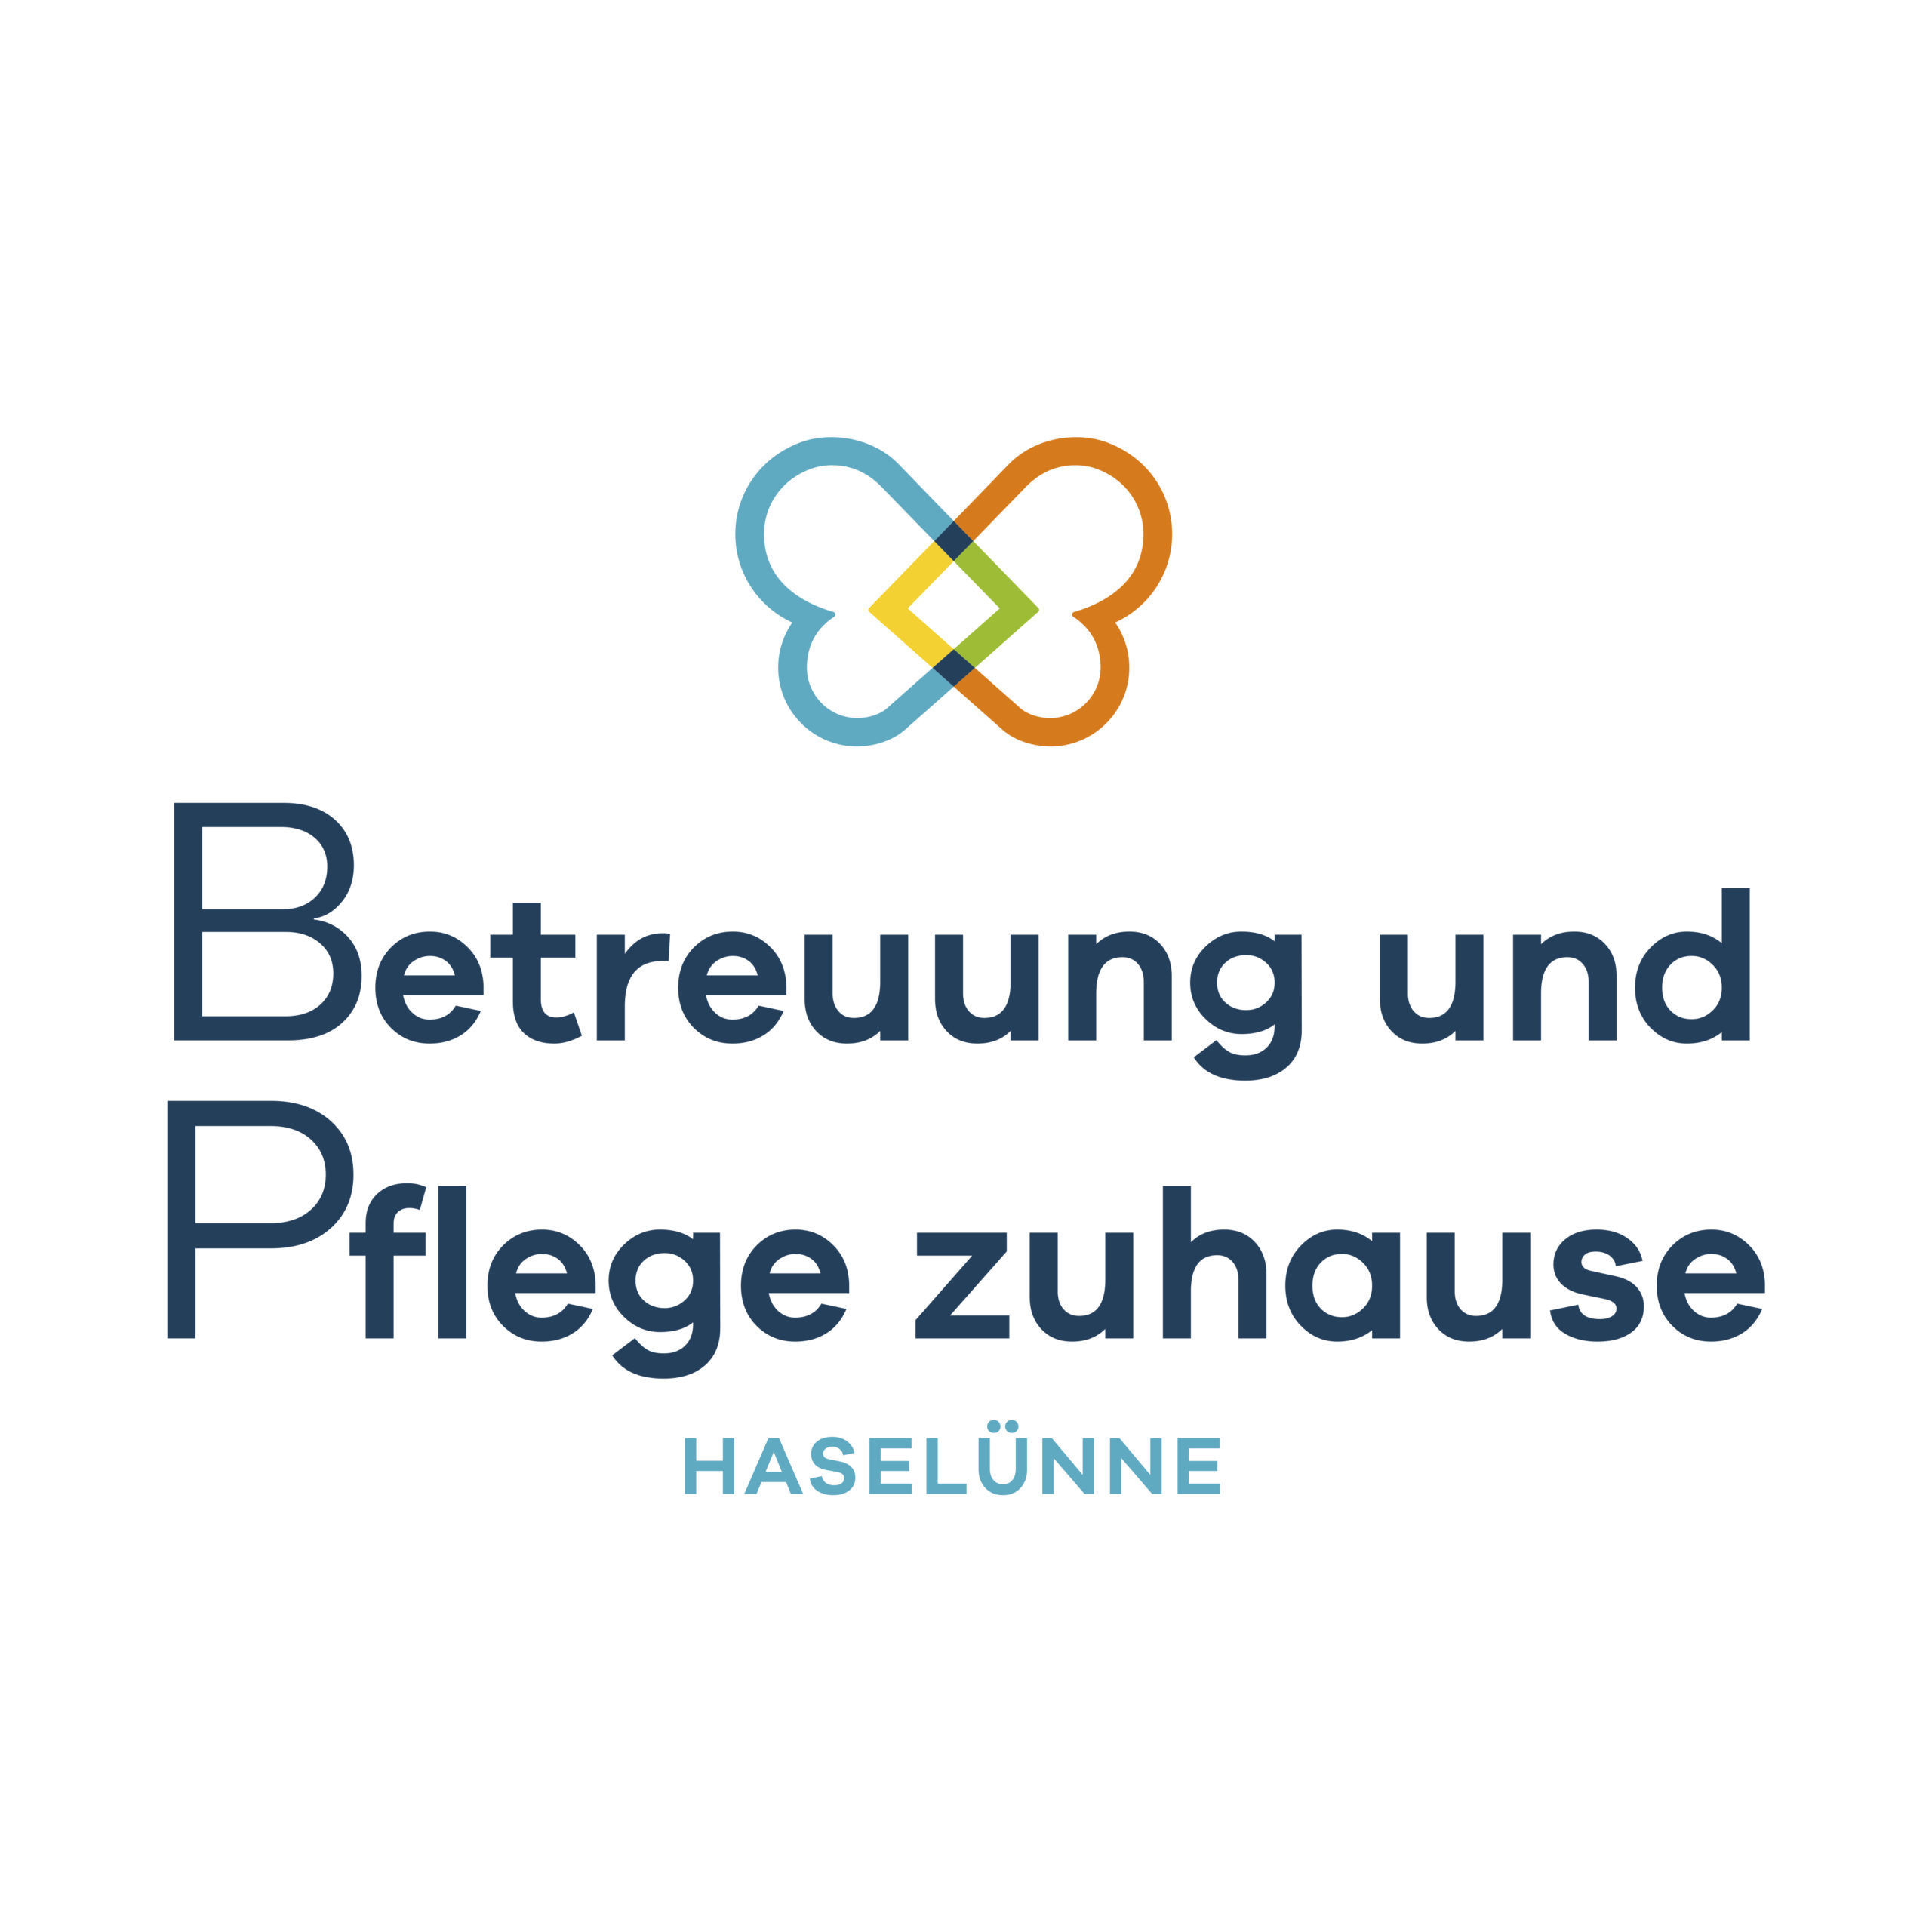 Betreuung und Pflege zuhause Haselünne in Haselünne - Logo